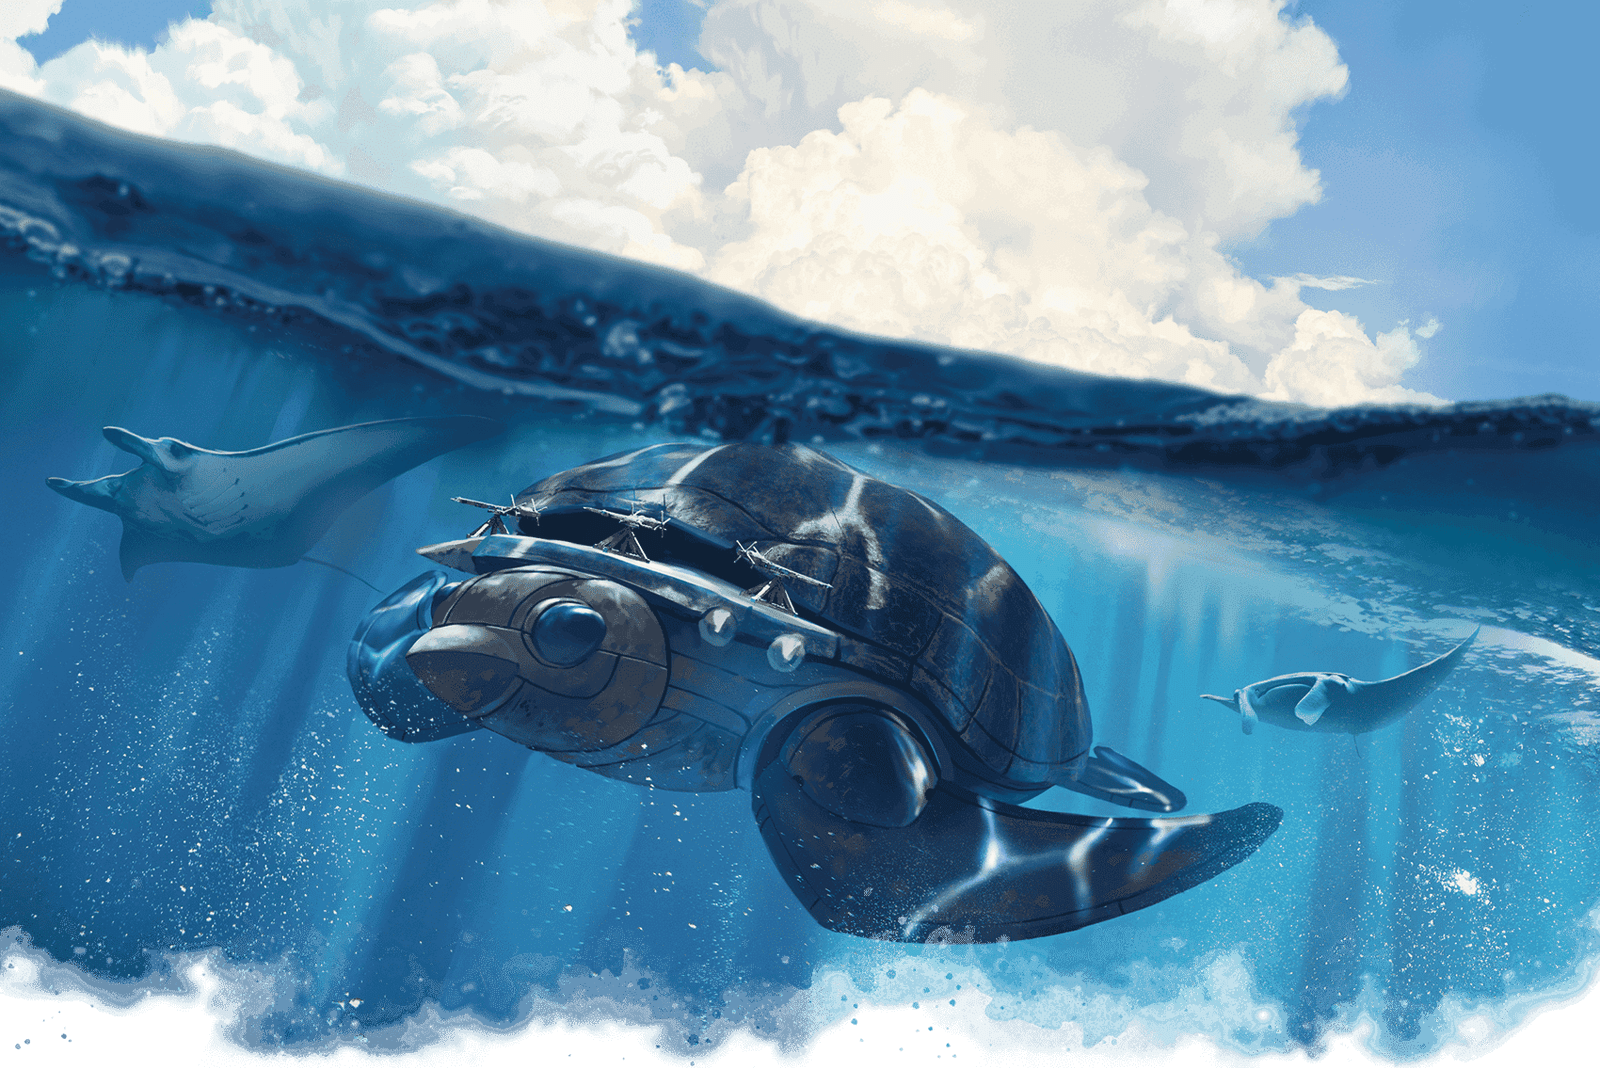 Turtle ship under water